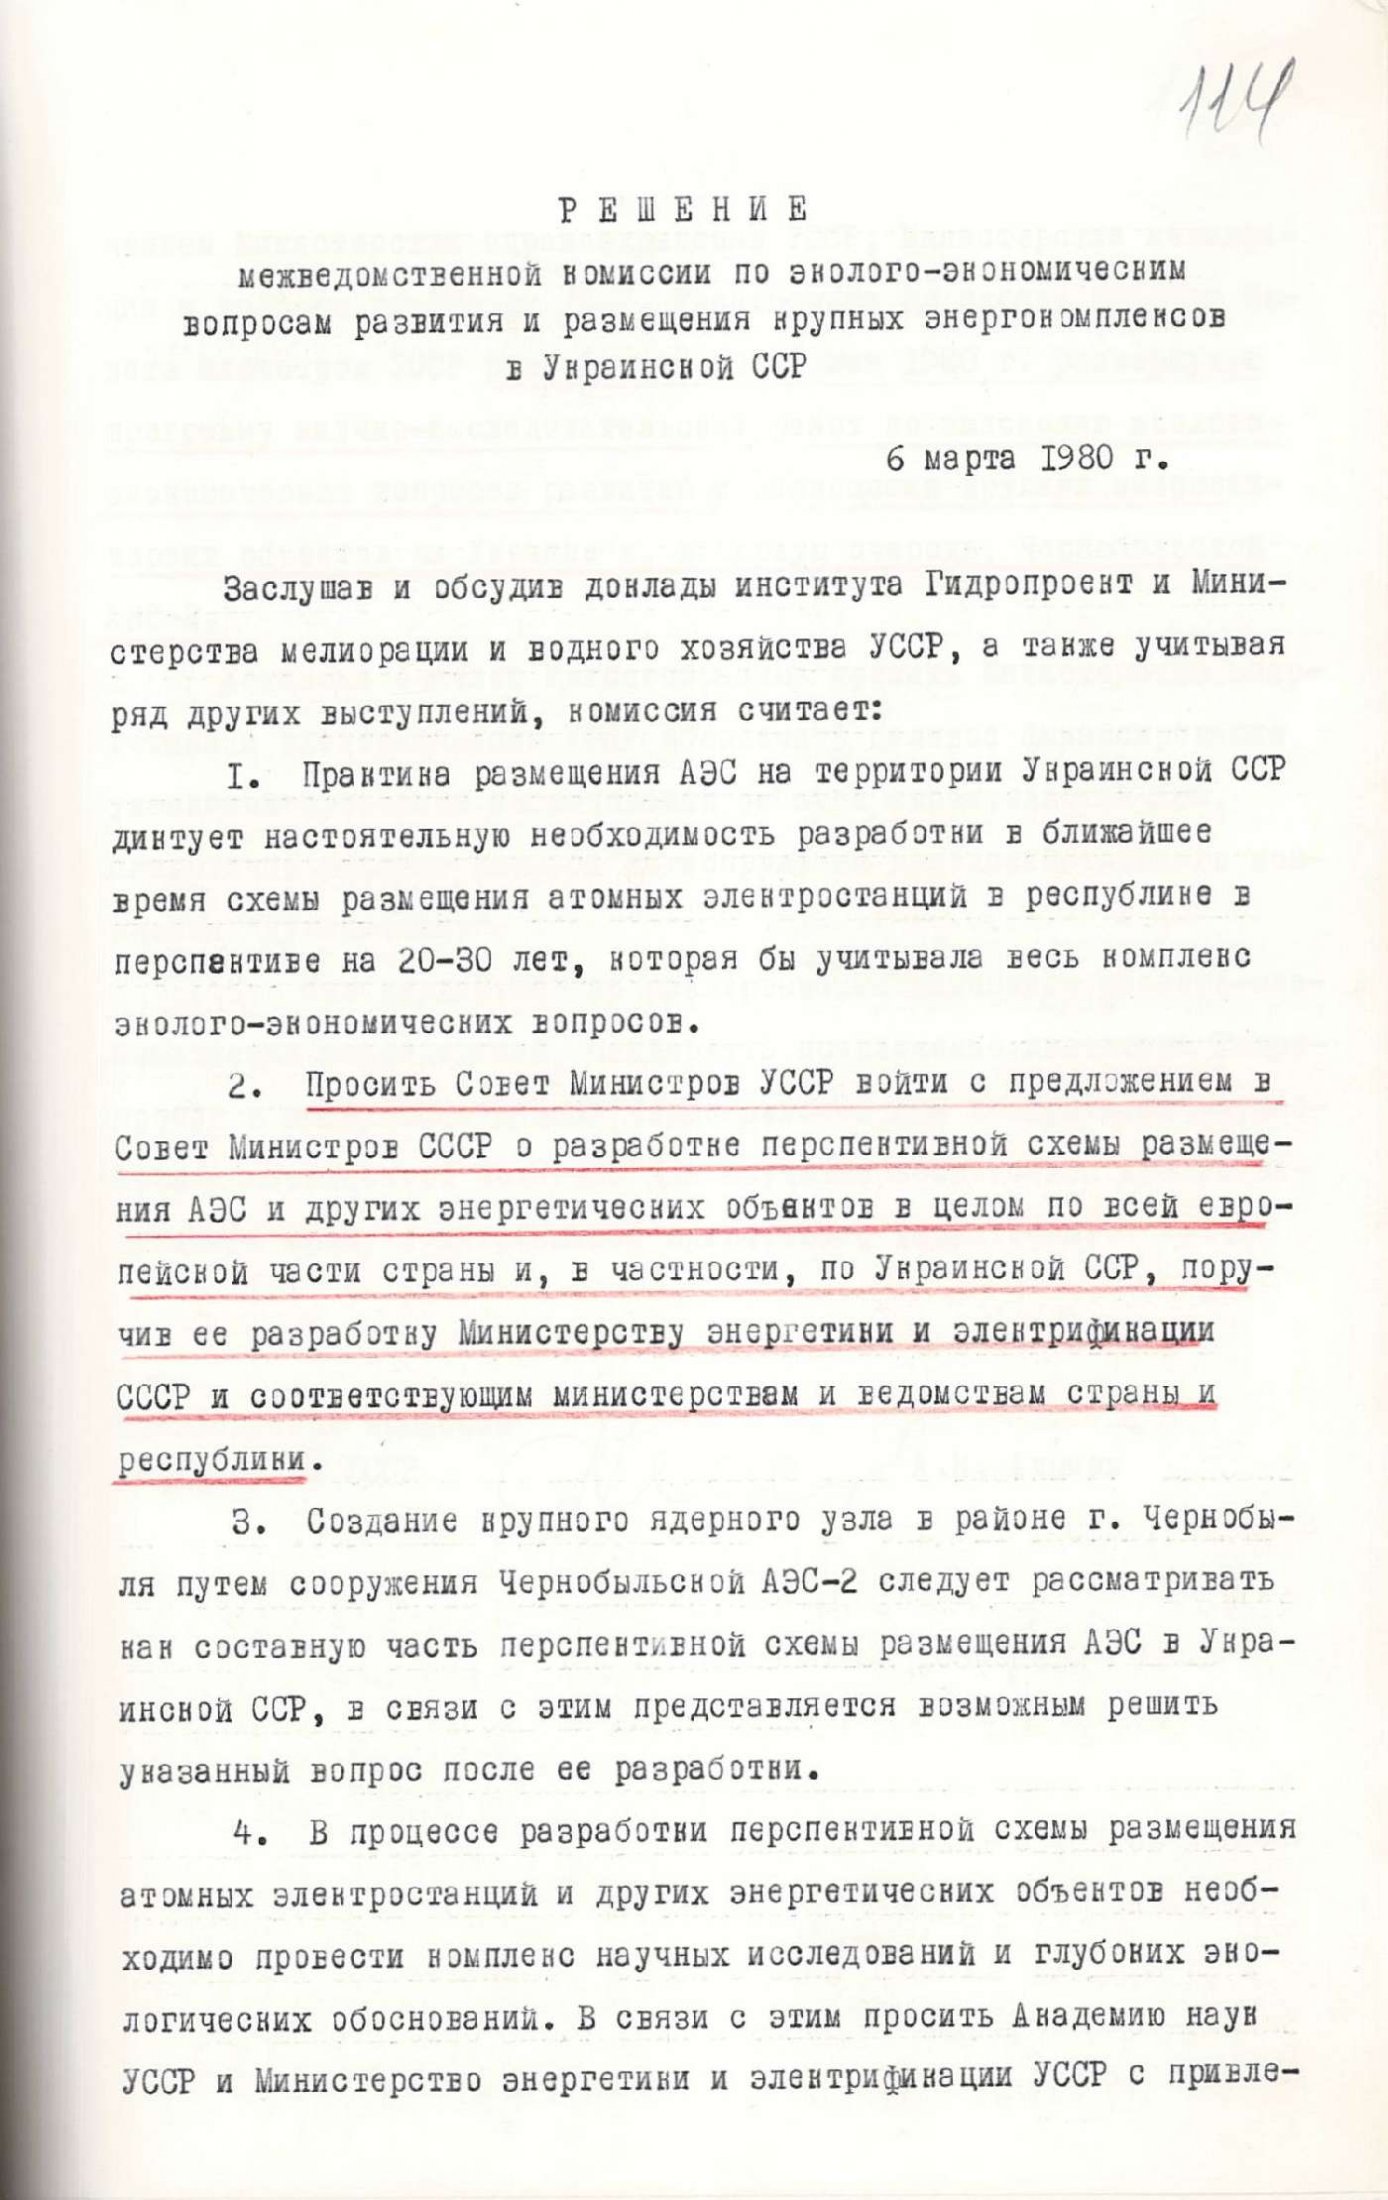 Рішення Міжвідомчої комісії по еколого-економічним питанням розвитку і розміщенню великих енергокомплексів в Української РСР. 28 березня 1980 р.